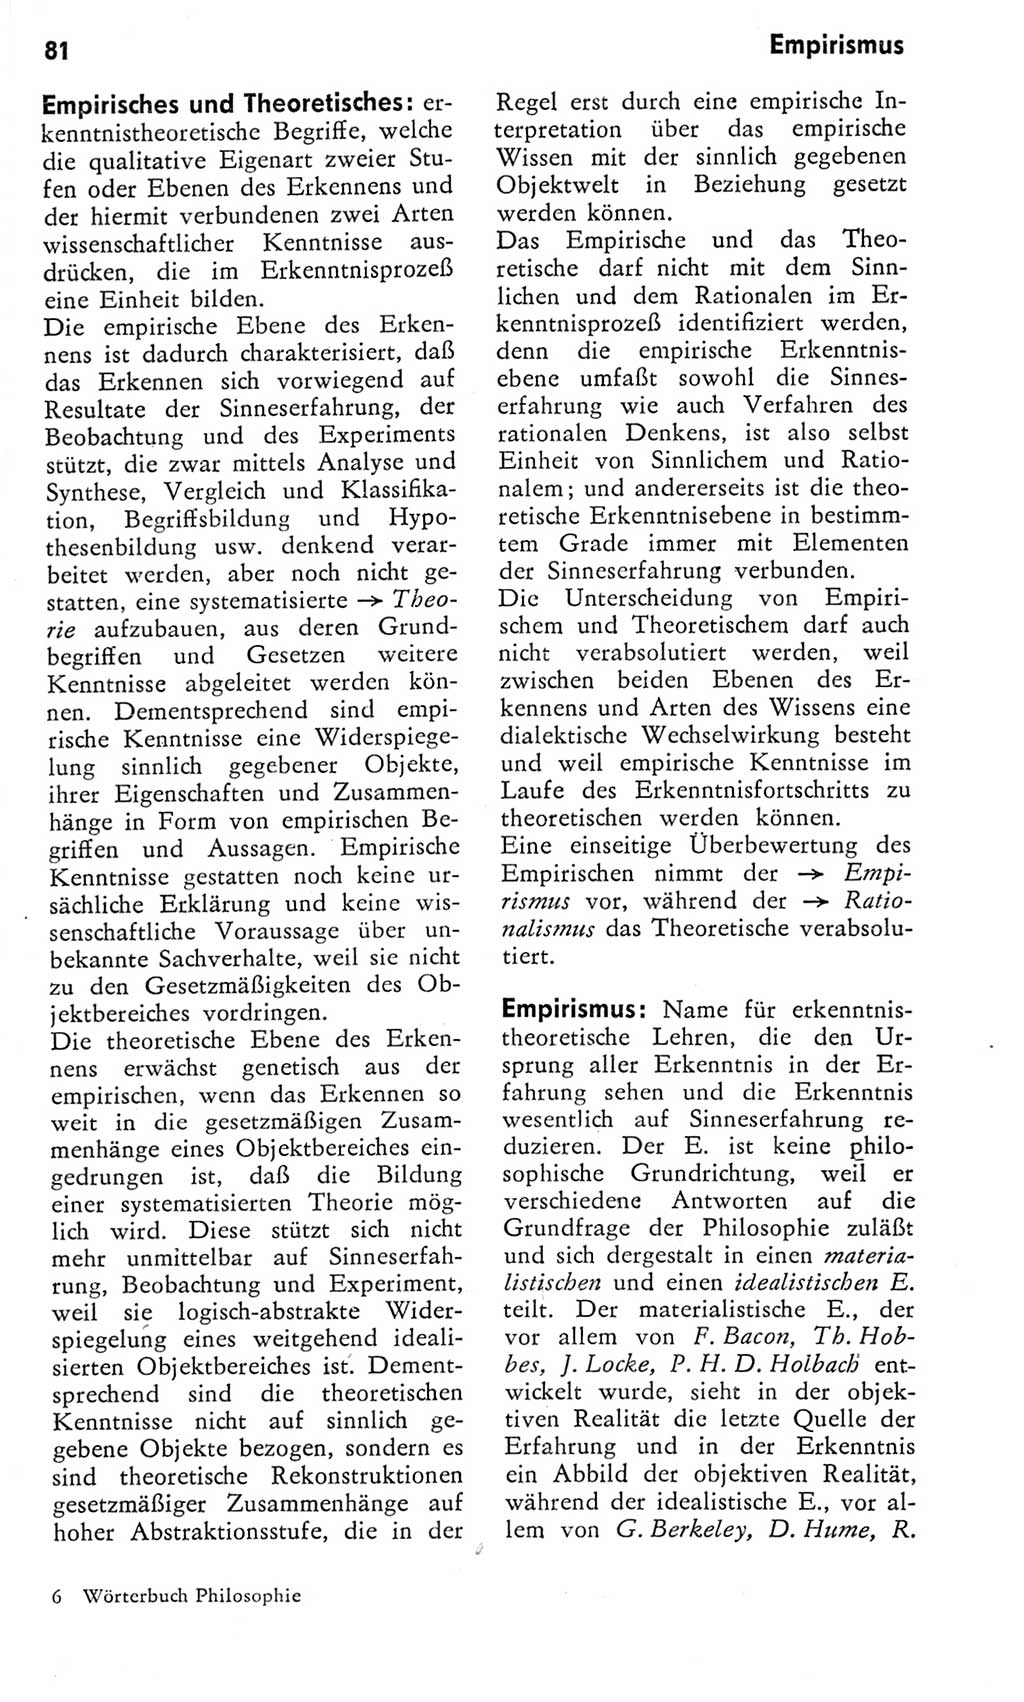 Kleines Wörterbuch der marxistisch-leninistischen Philosophie [Deutsche Demokratische Republik (DDR)] 1975, Seite 81 (Kl. Wb. ML Phil. DDR 1975, S. 81)